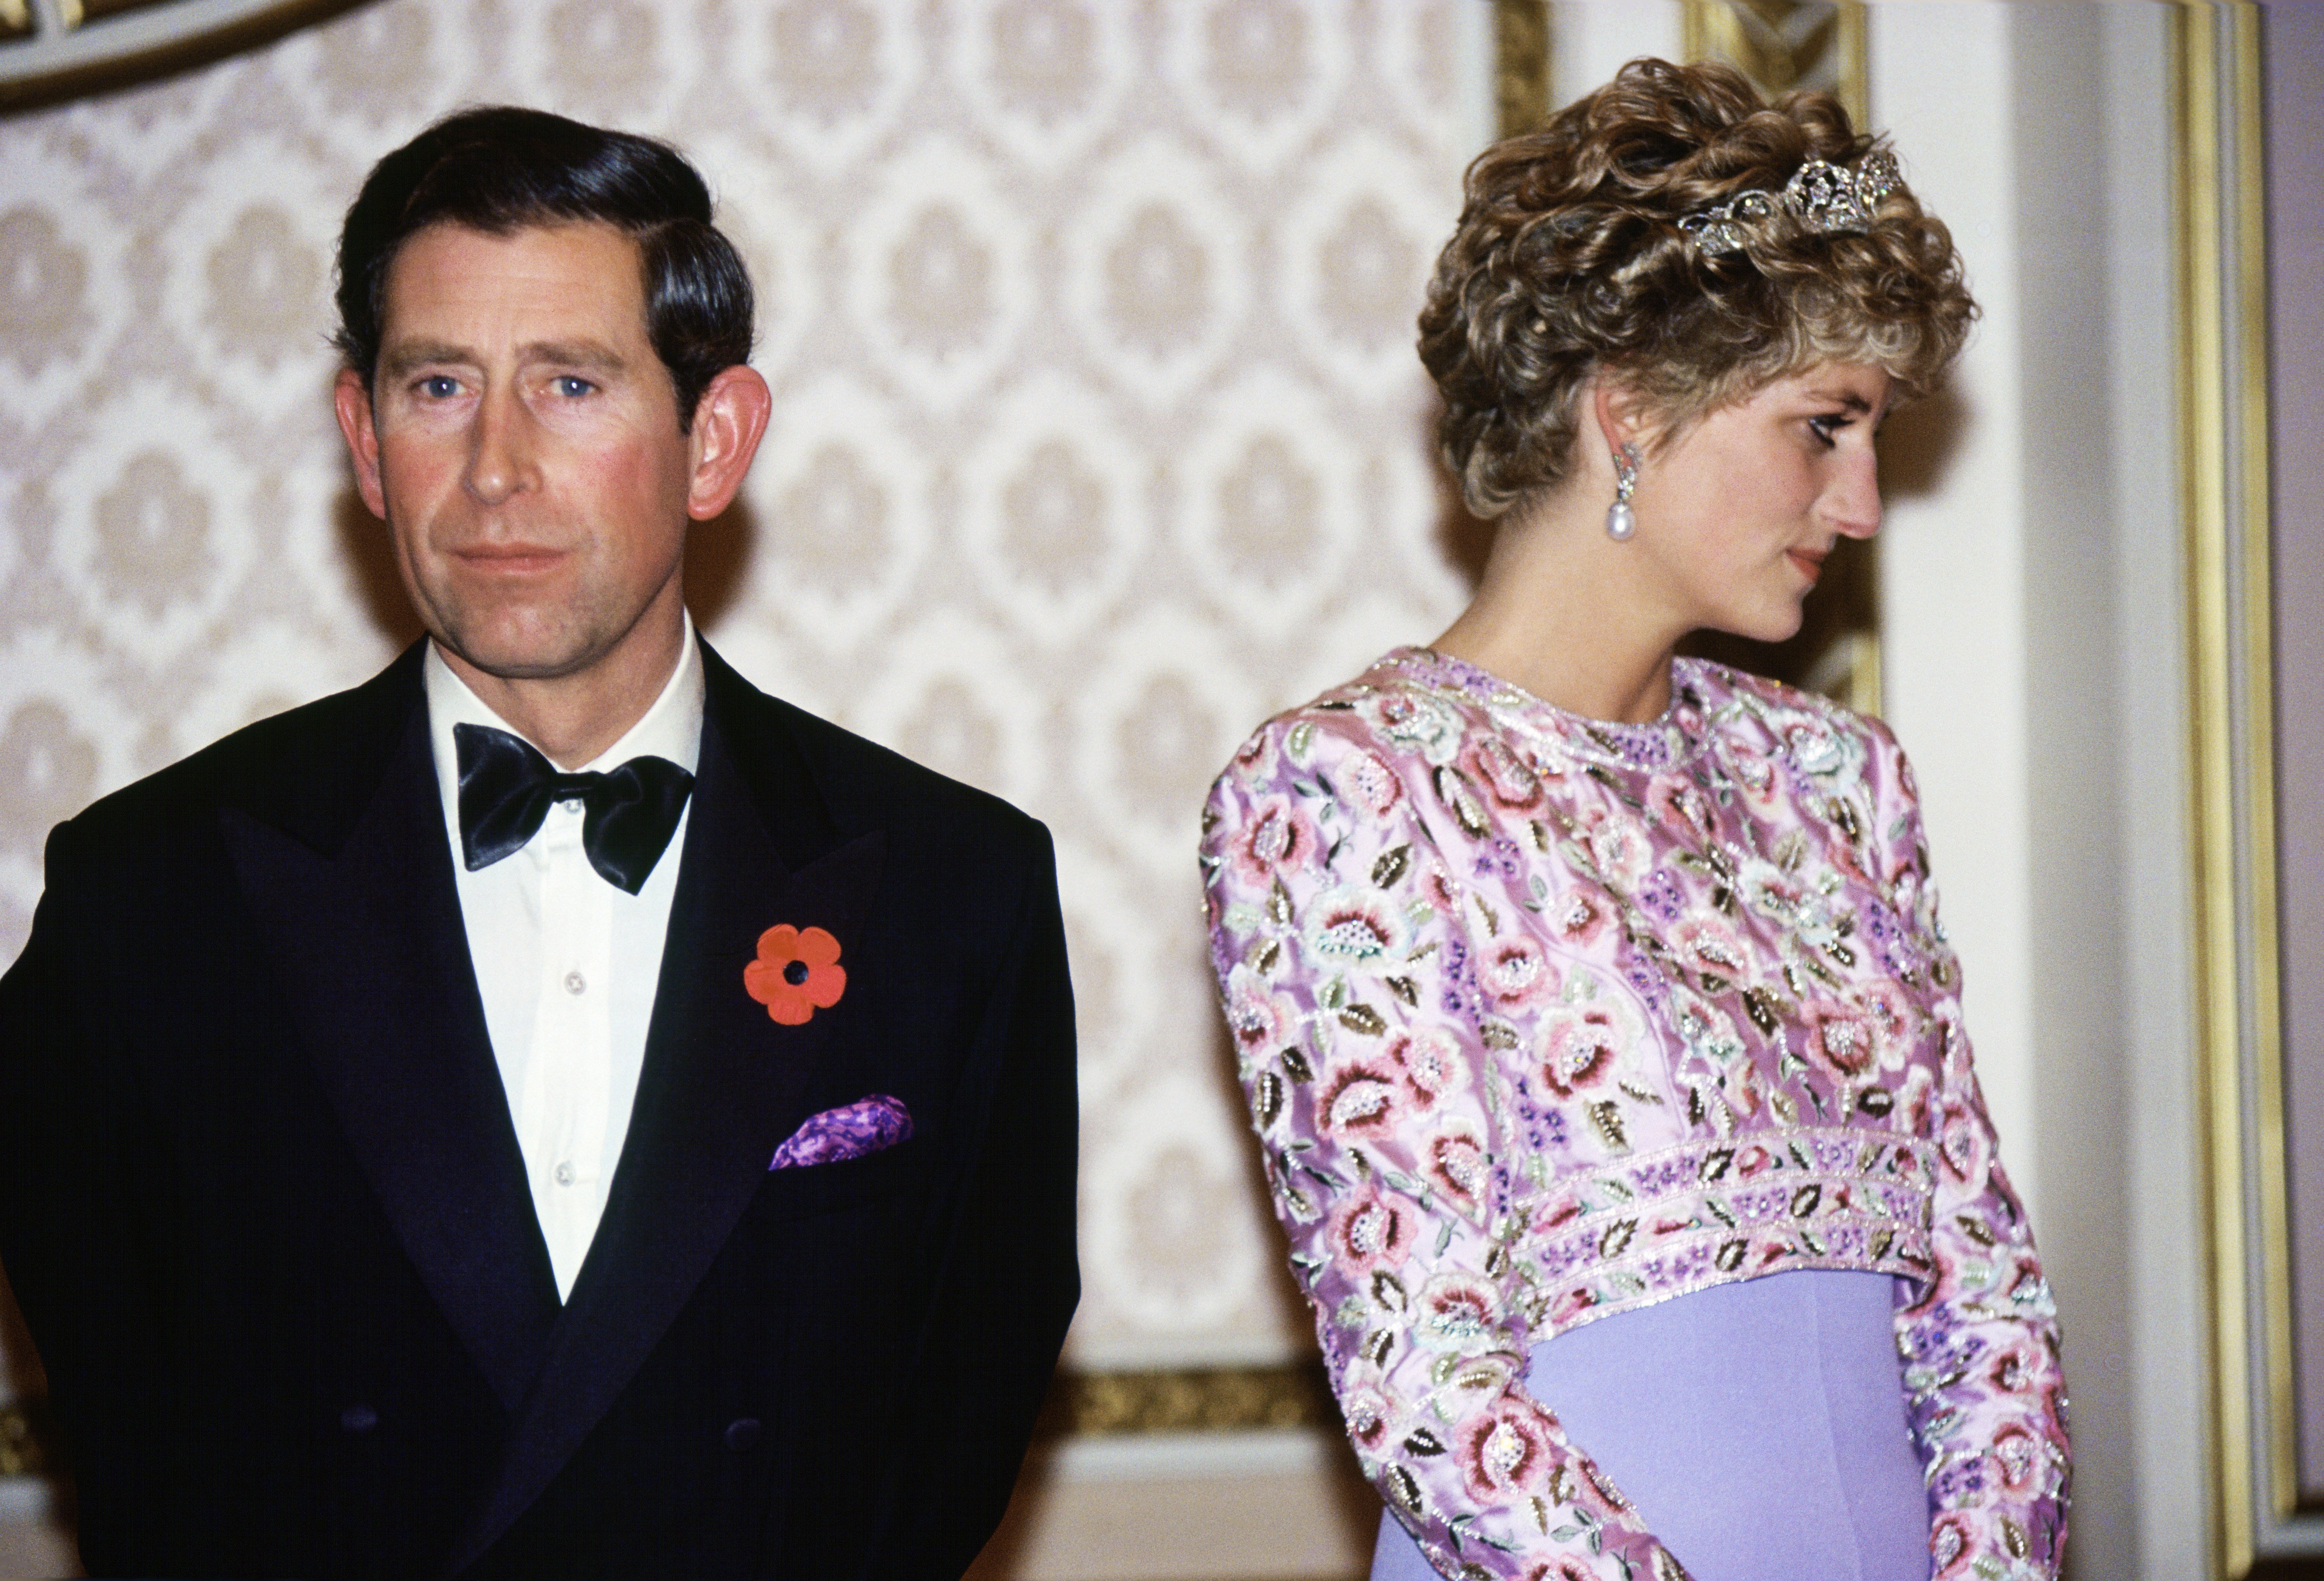 Le Prince Charles et son épouse la Princesse Diana photographiés lors de leur dernier voyage officiel ensemble - une visite en République de Corée | Source : Getty Images